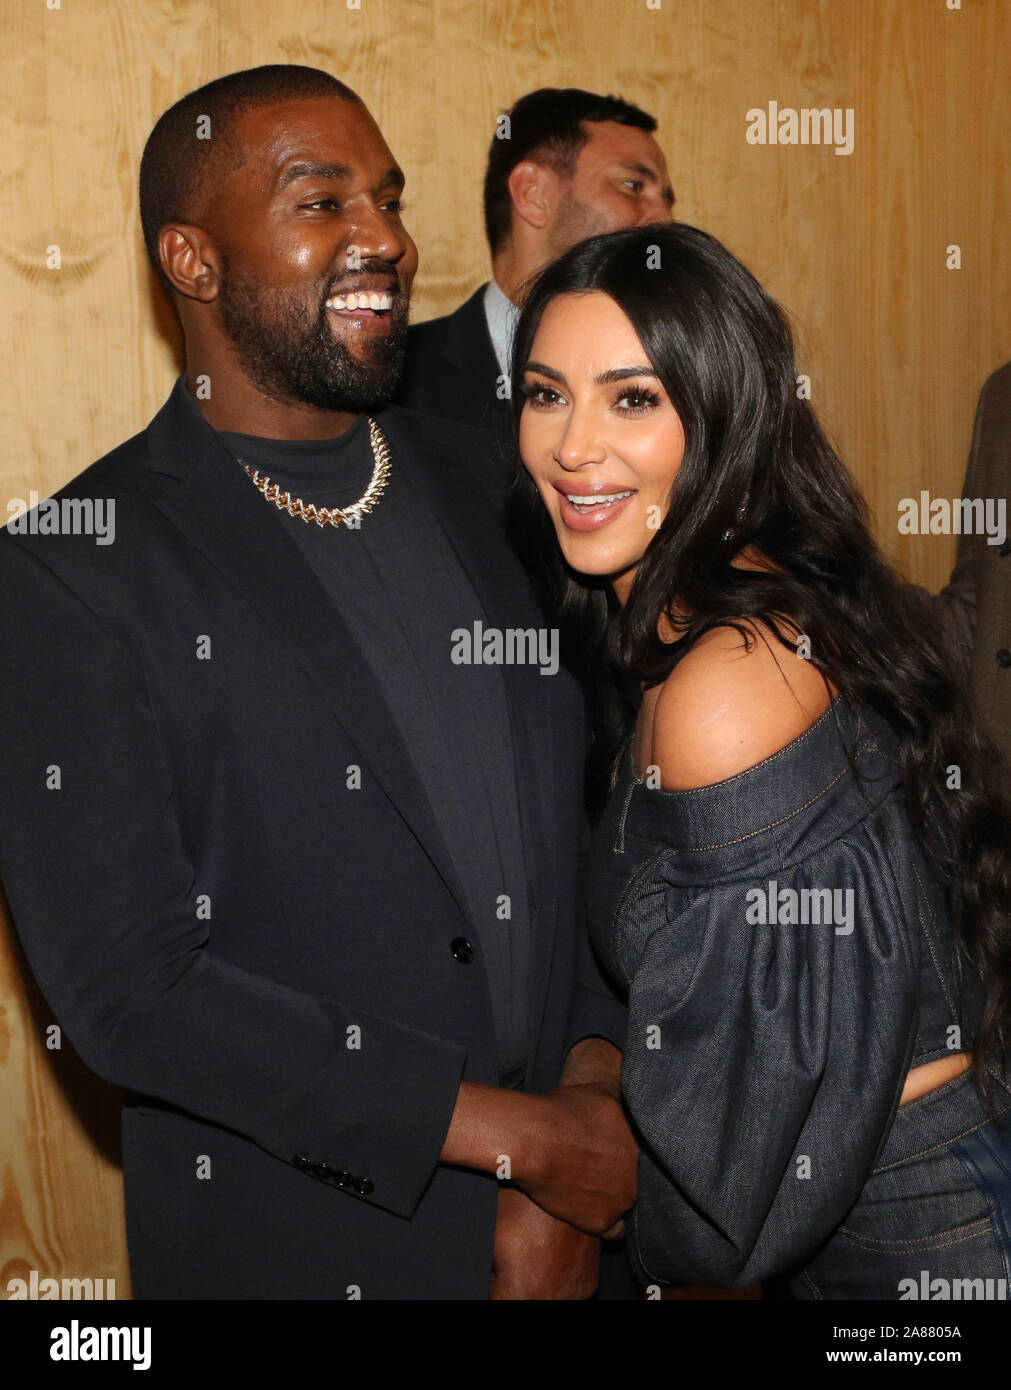 Nueva York, NY, EUA. 6 nov, 2019. Kanye West y Kim Kardashian West asistir  a la Kanye West "seguir a Dios' de música presentación en vídeo en la  tienda de Burberry, 6